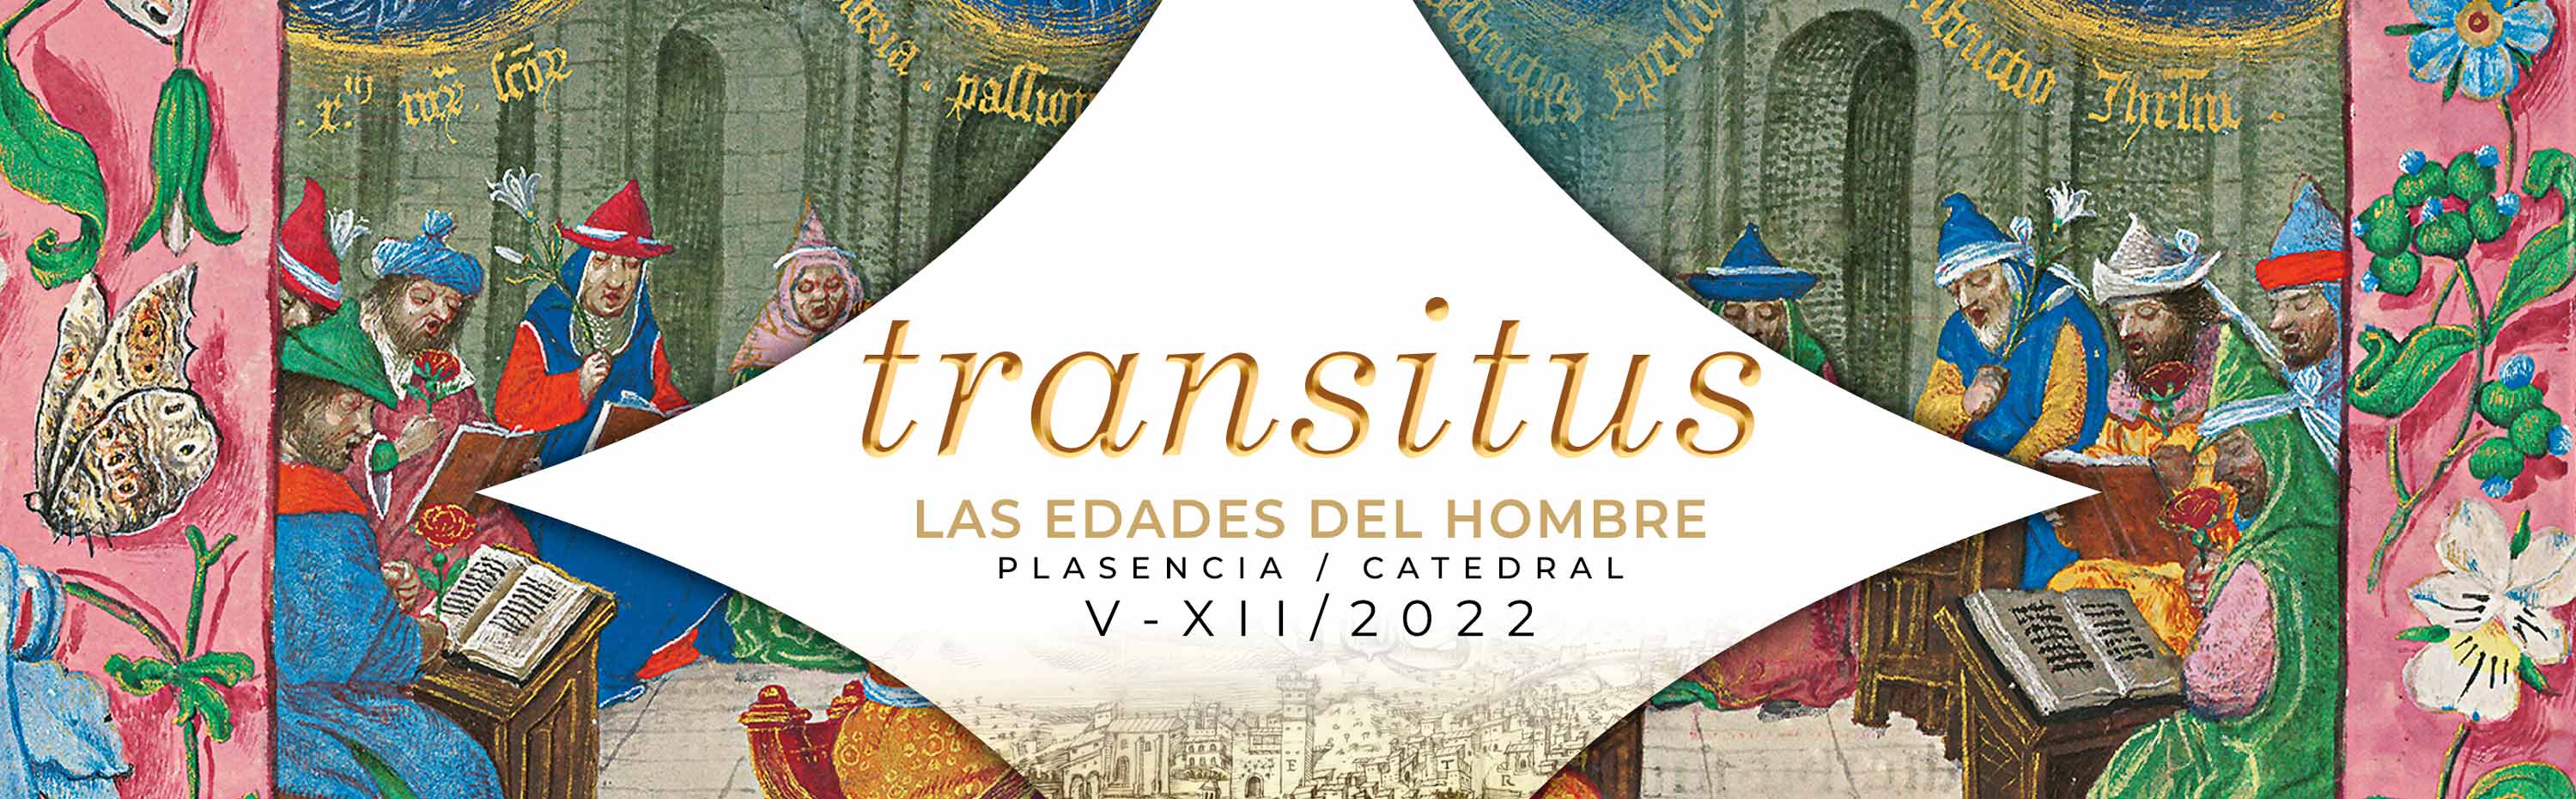 TRANSITUS - LAS EDADES DEL HOMBRE header 1